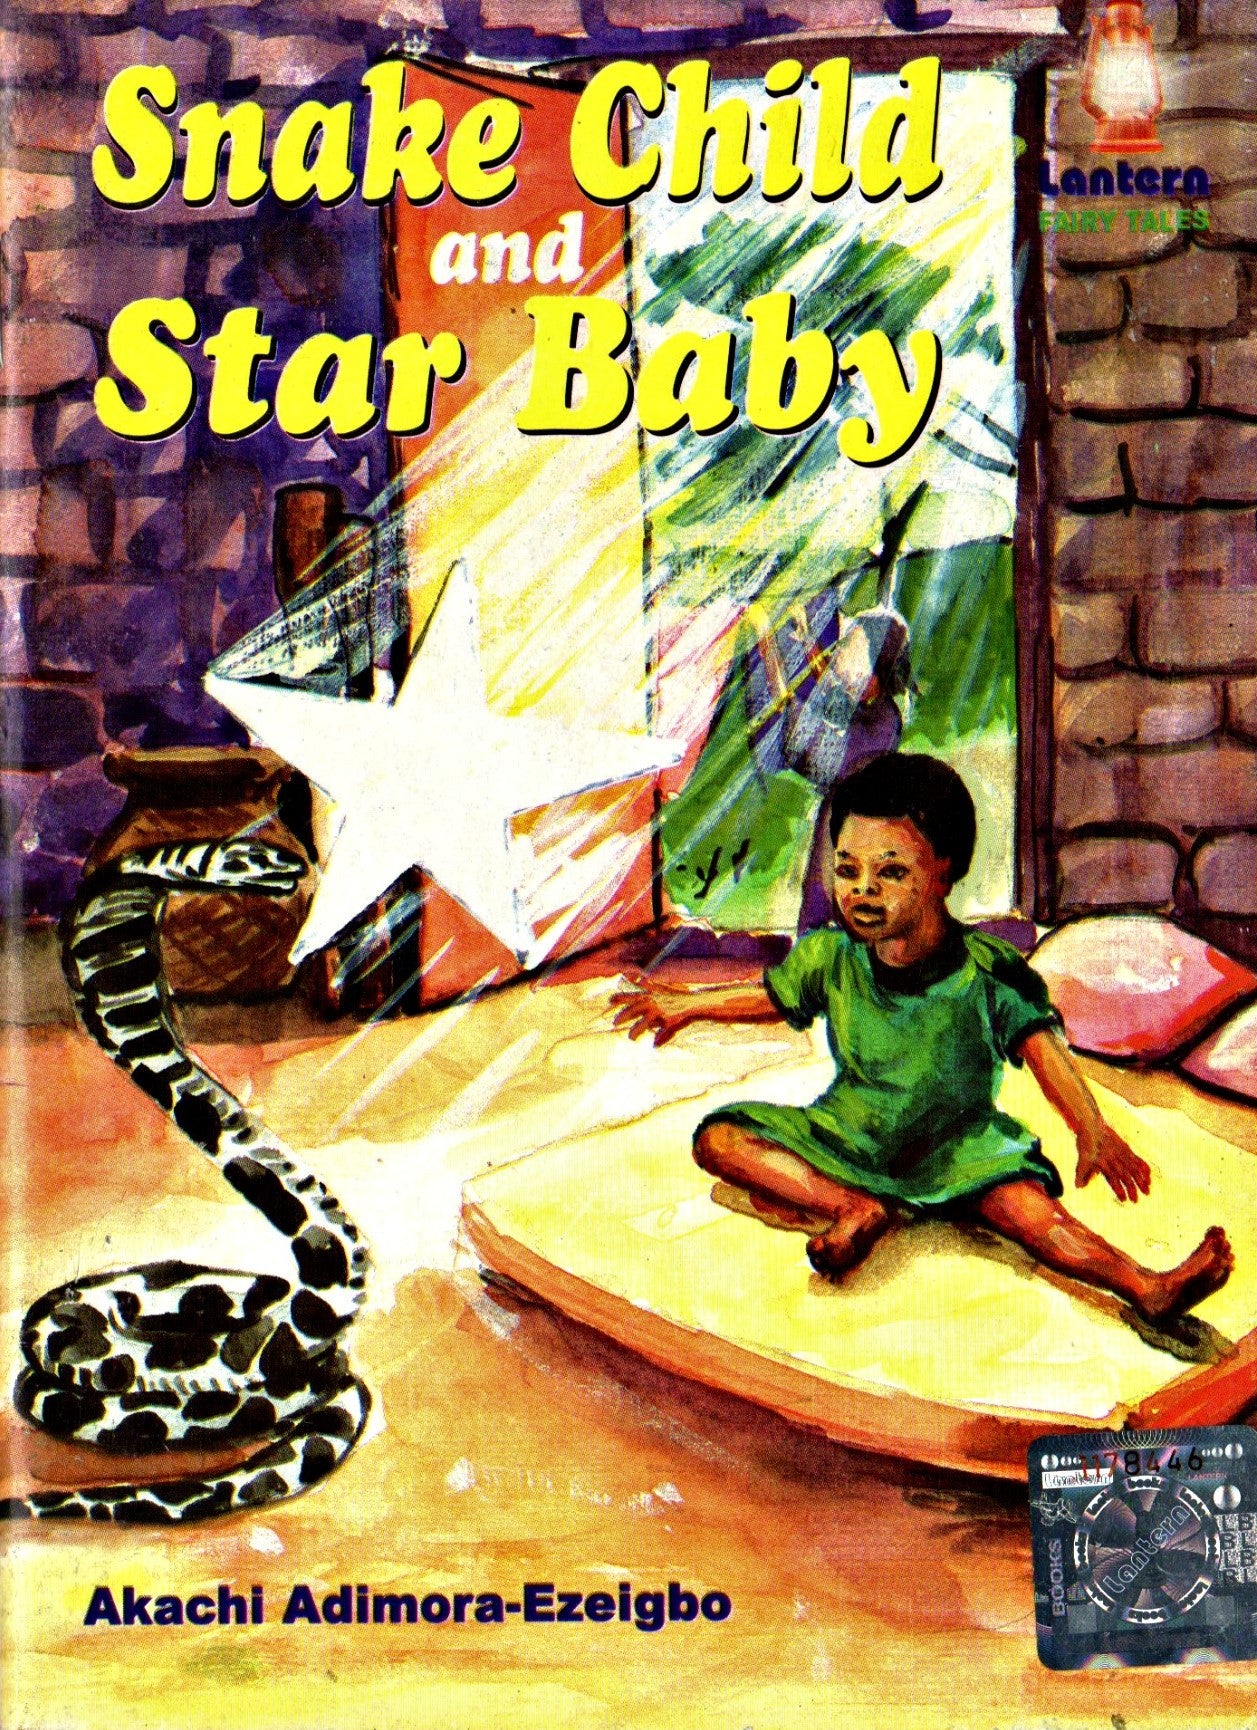 Snake Child and Star Baby - Akachi Adimora-Ezeigbo